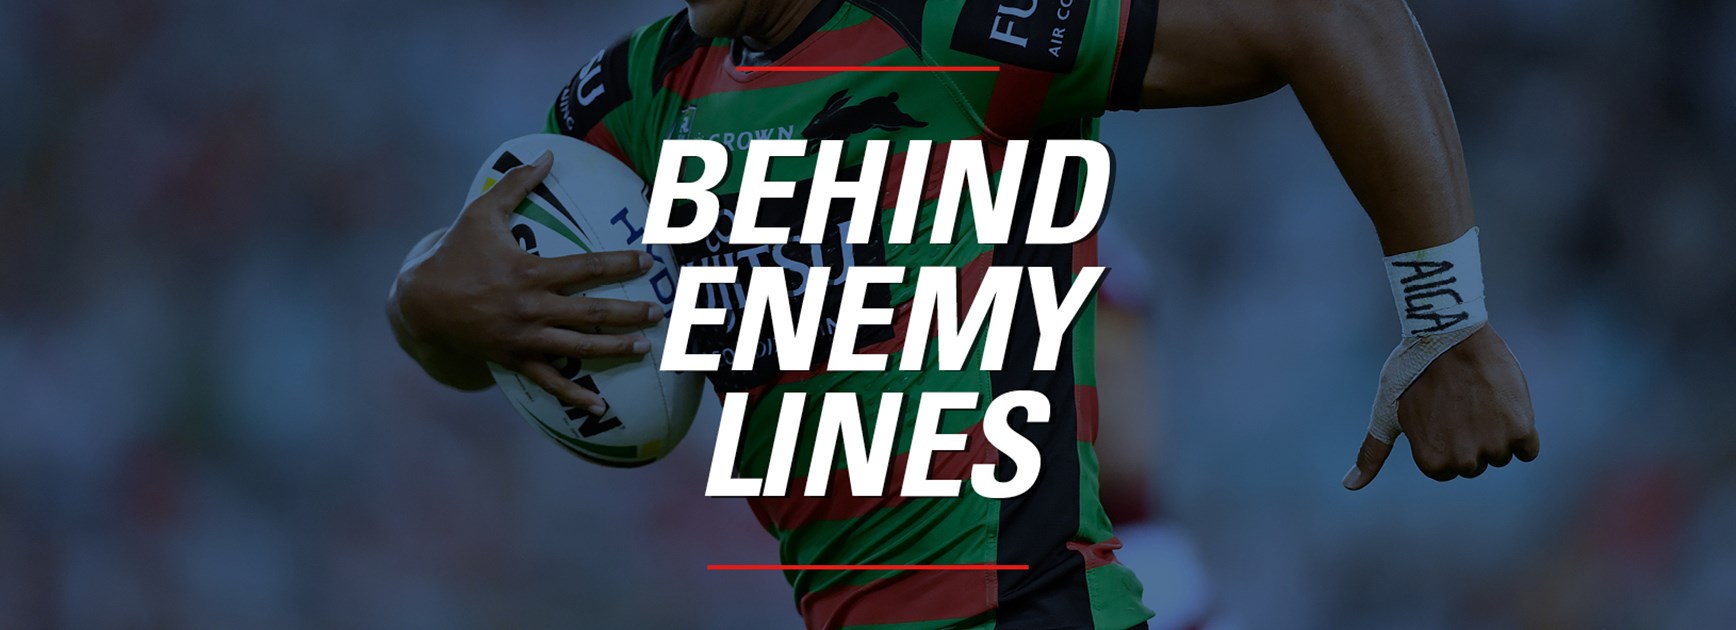 Behind Enemy Lines - Round 9